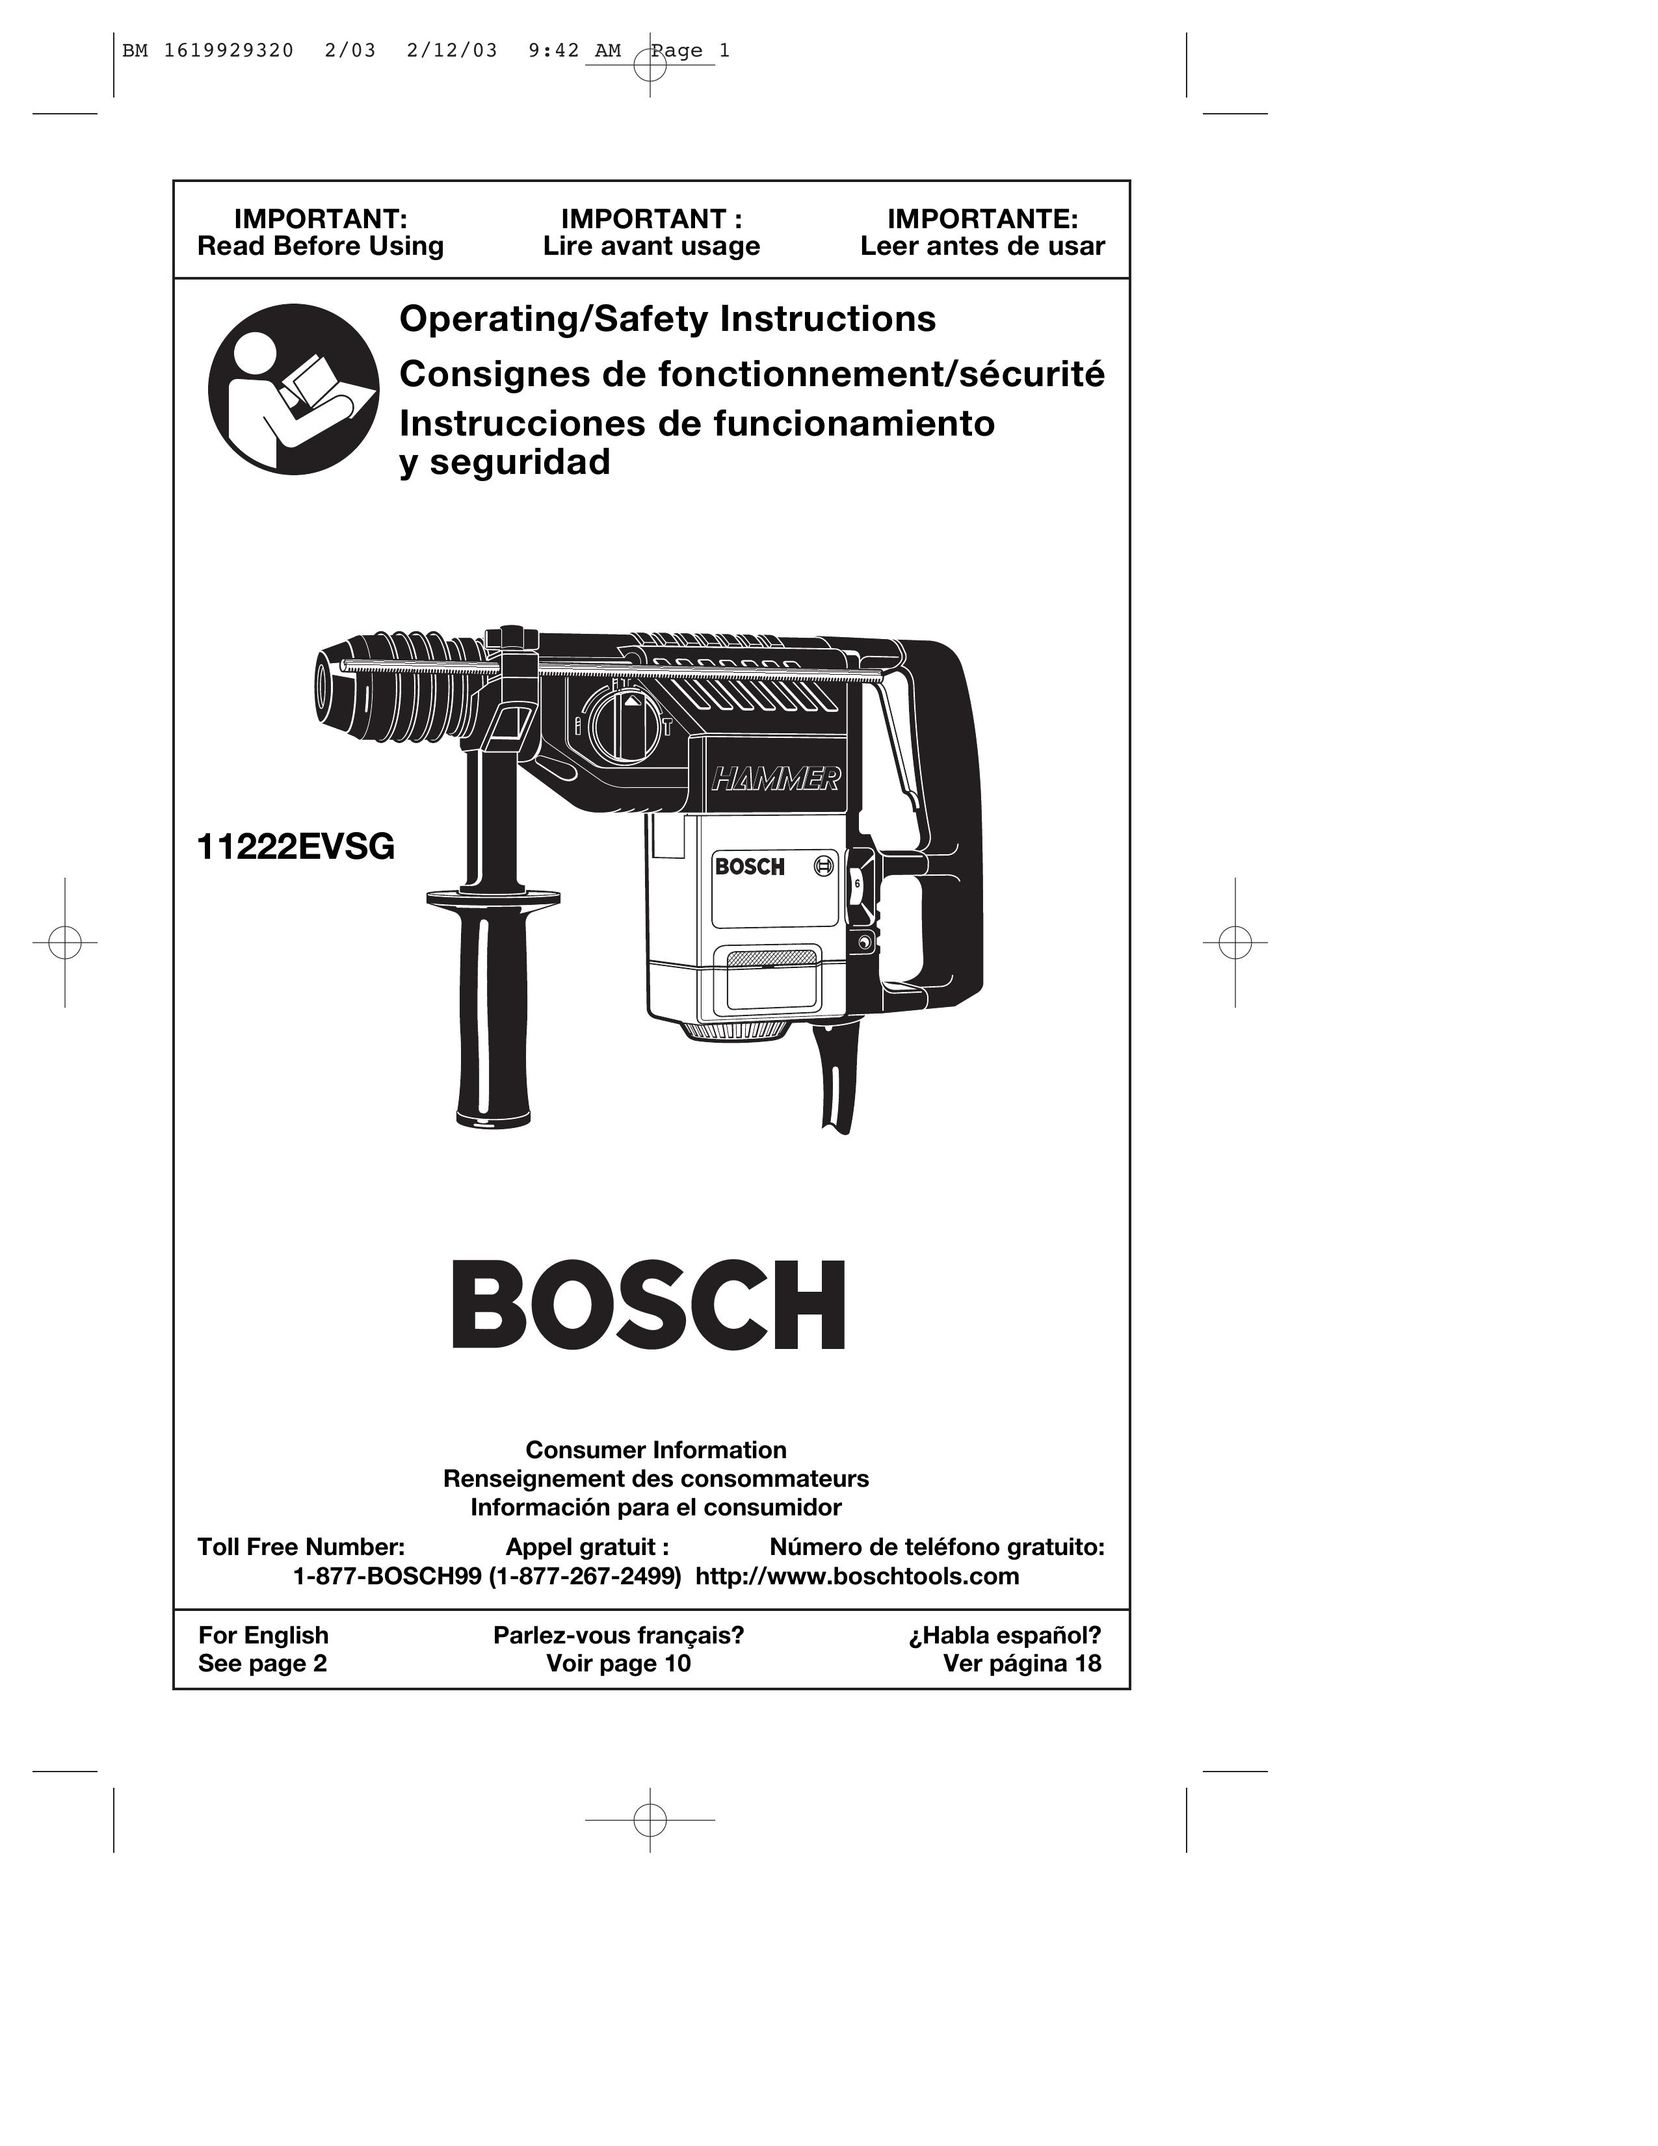 Bosch Power Tools 11222EVSG Power Hammer User Manual